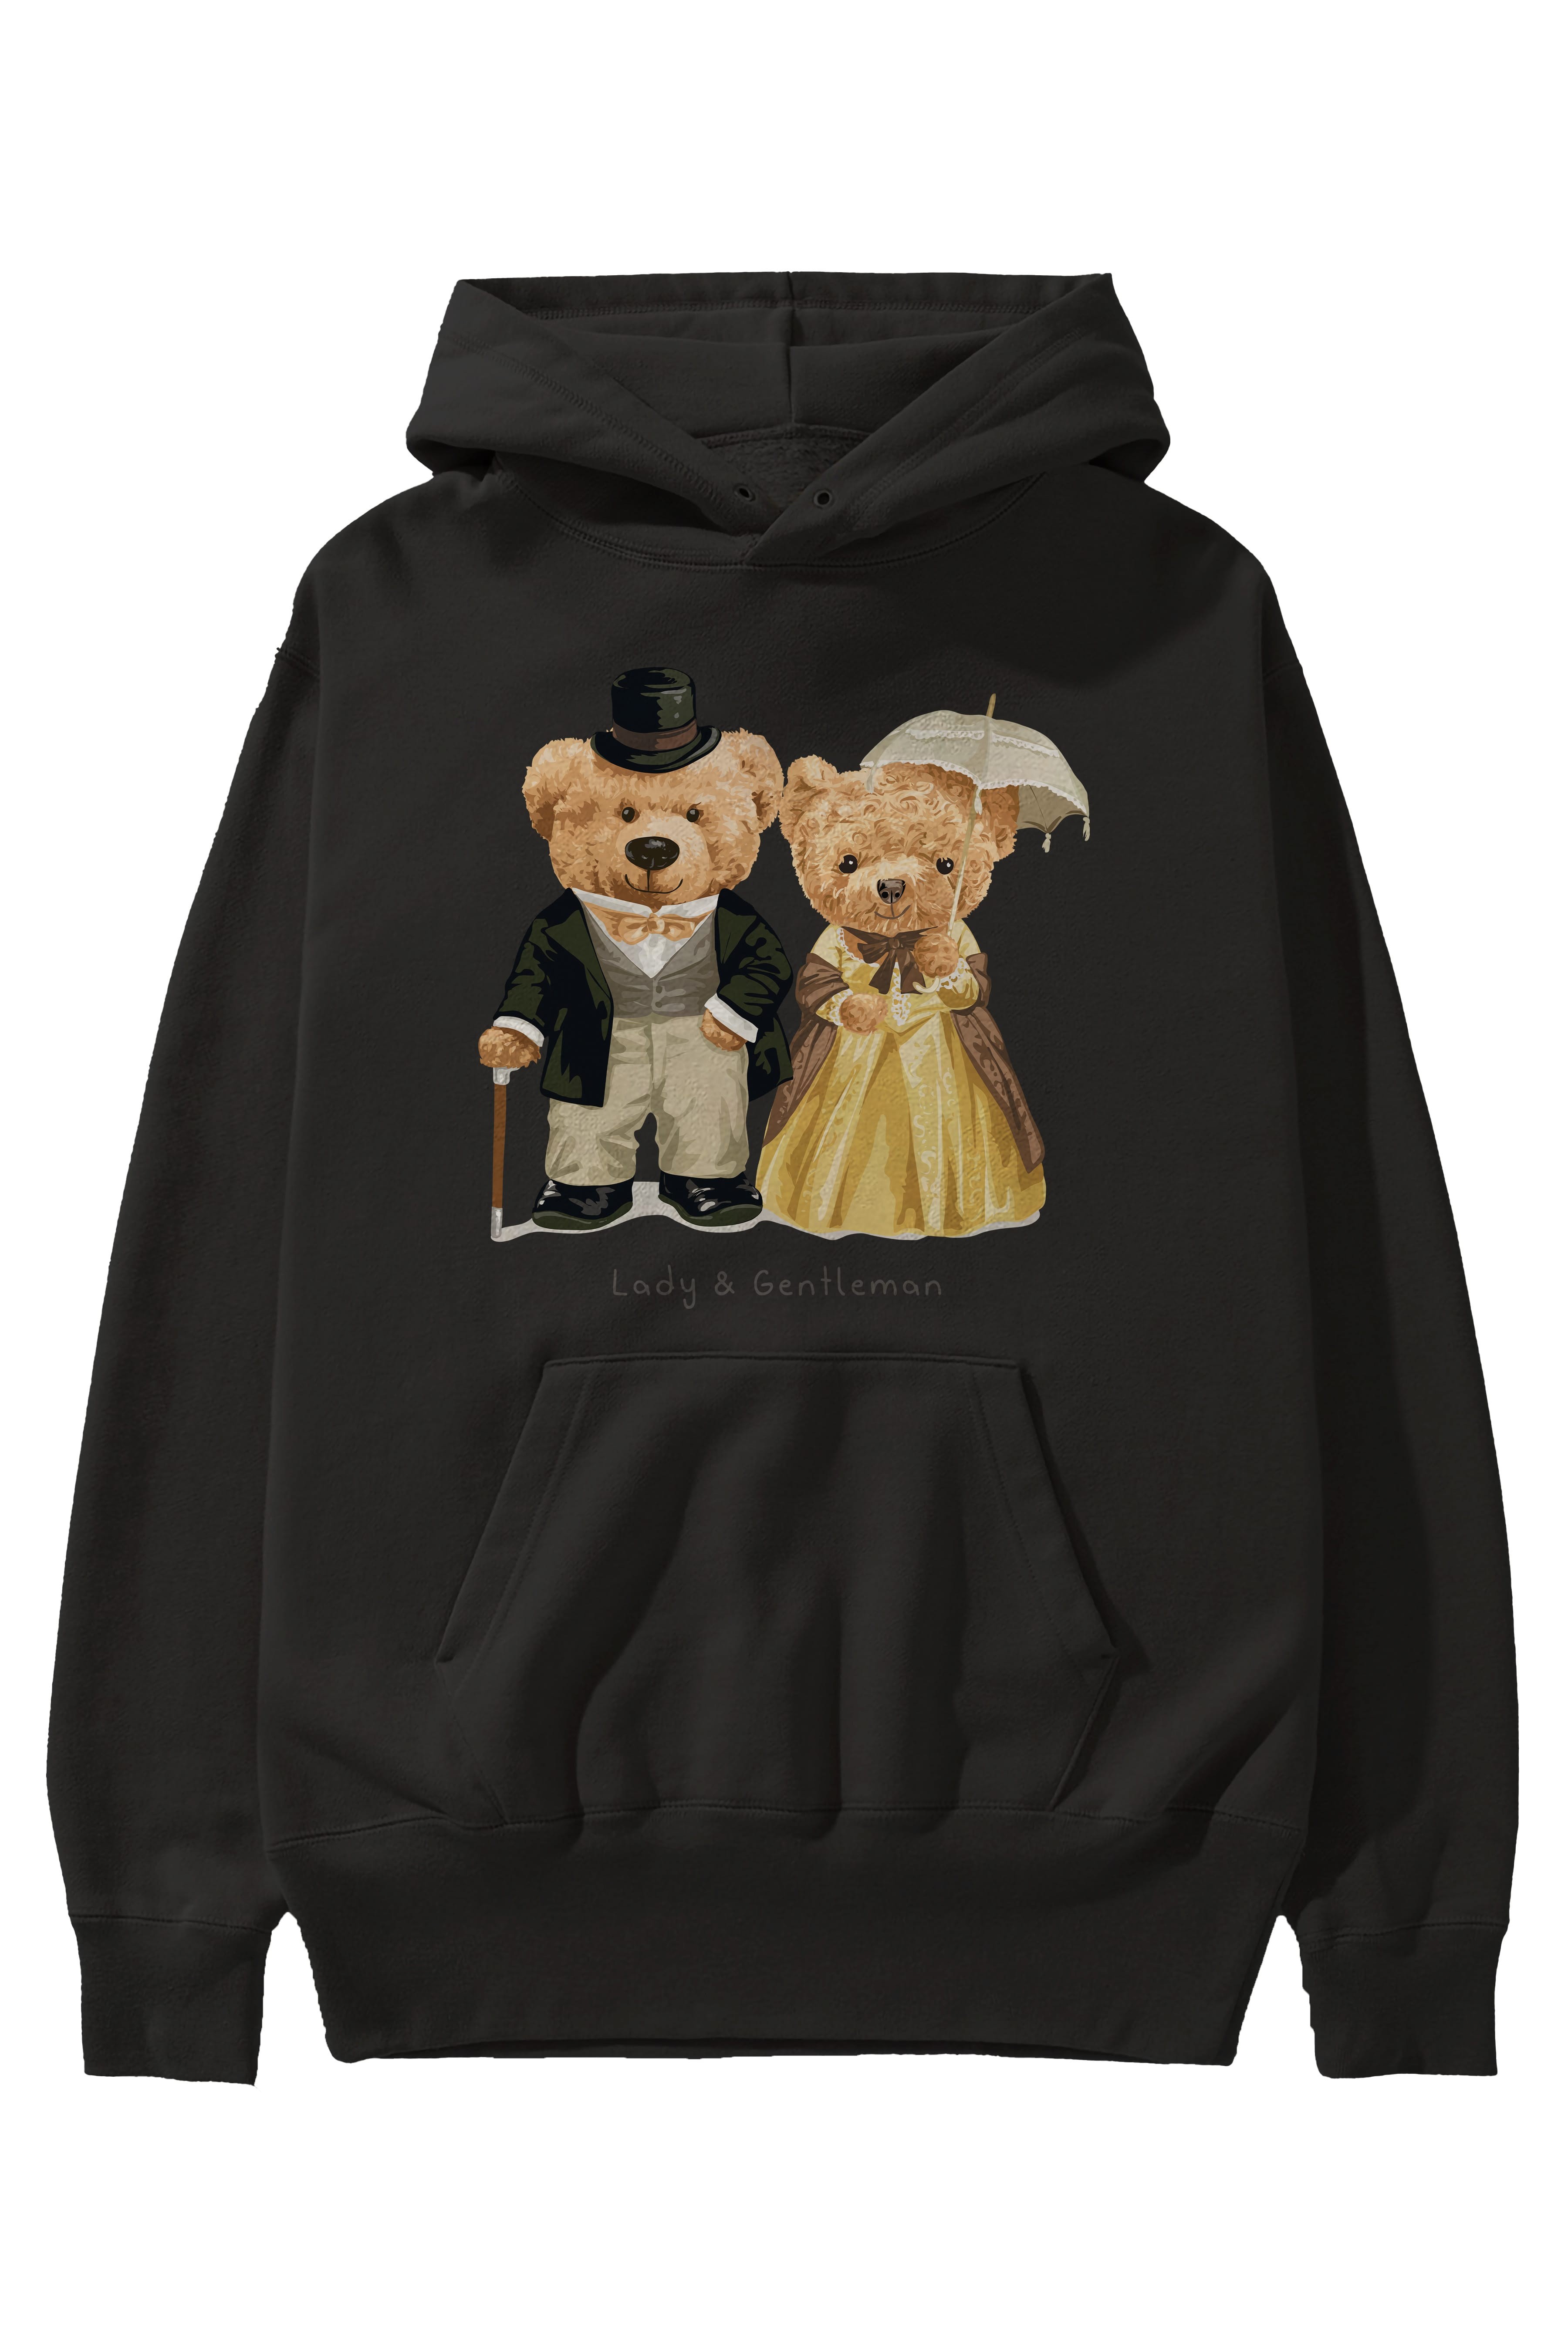 Teddy Bear Couple Ön Baskılı Hoodie Oversize Kapüşonlu Sweatshirt Erkek Kadın Unisex